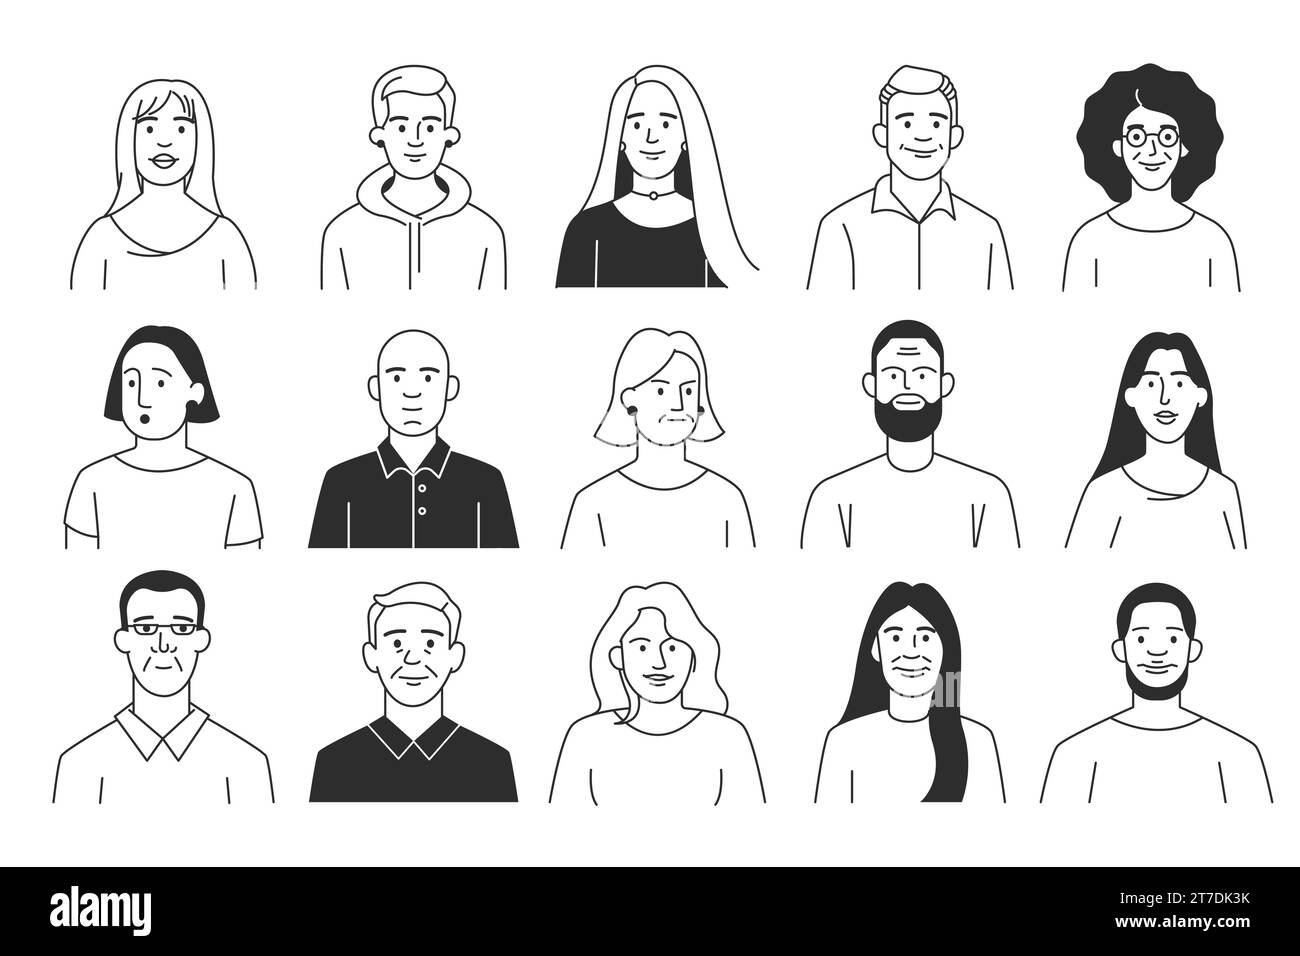 Doodle People. Personaggi umani dei cartoni animati con diverse emozioni e gesti, gruppo di persone multiculturali disegnate a mano. Insieme di vettori Illustrazione Vettoriale